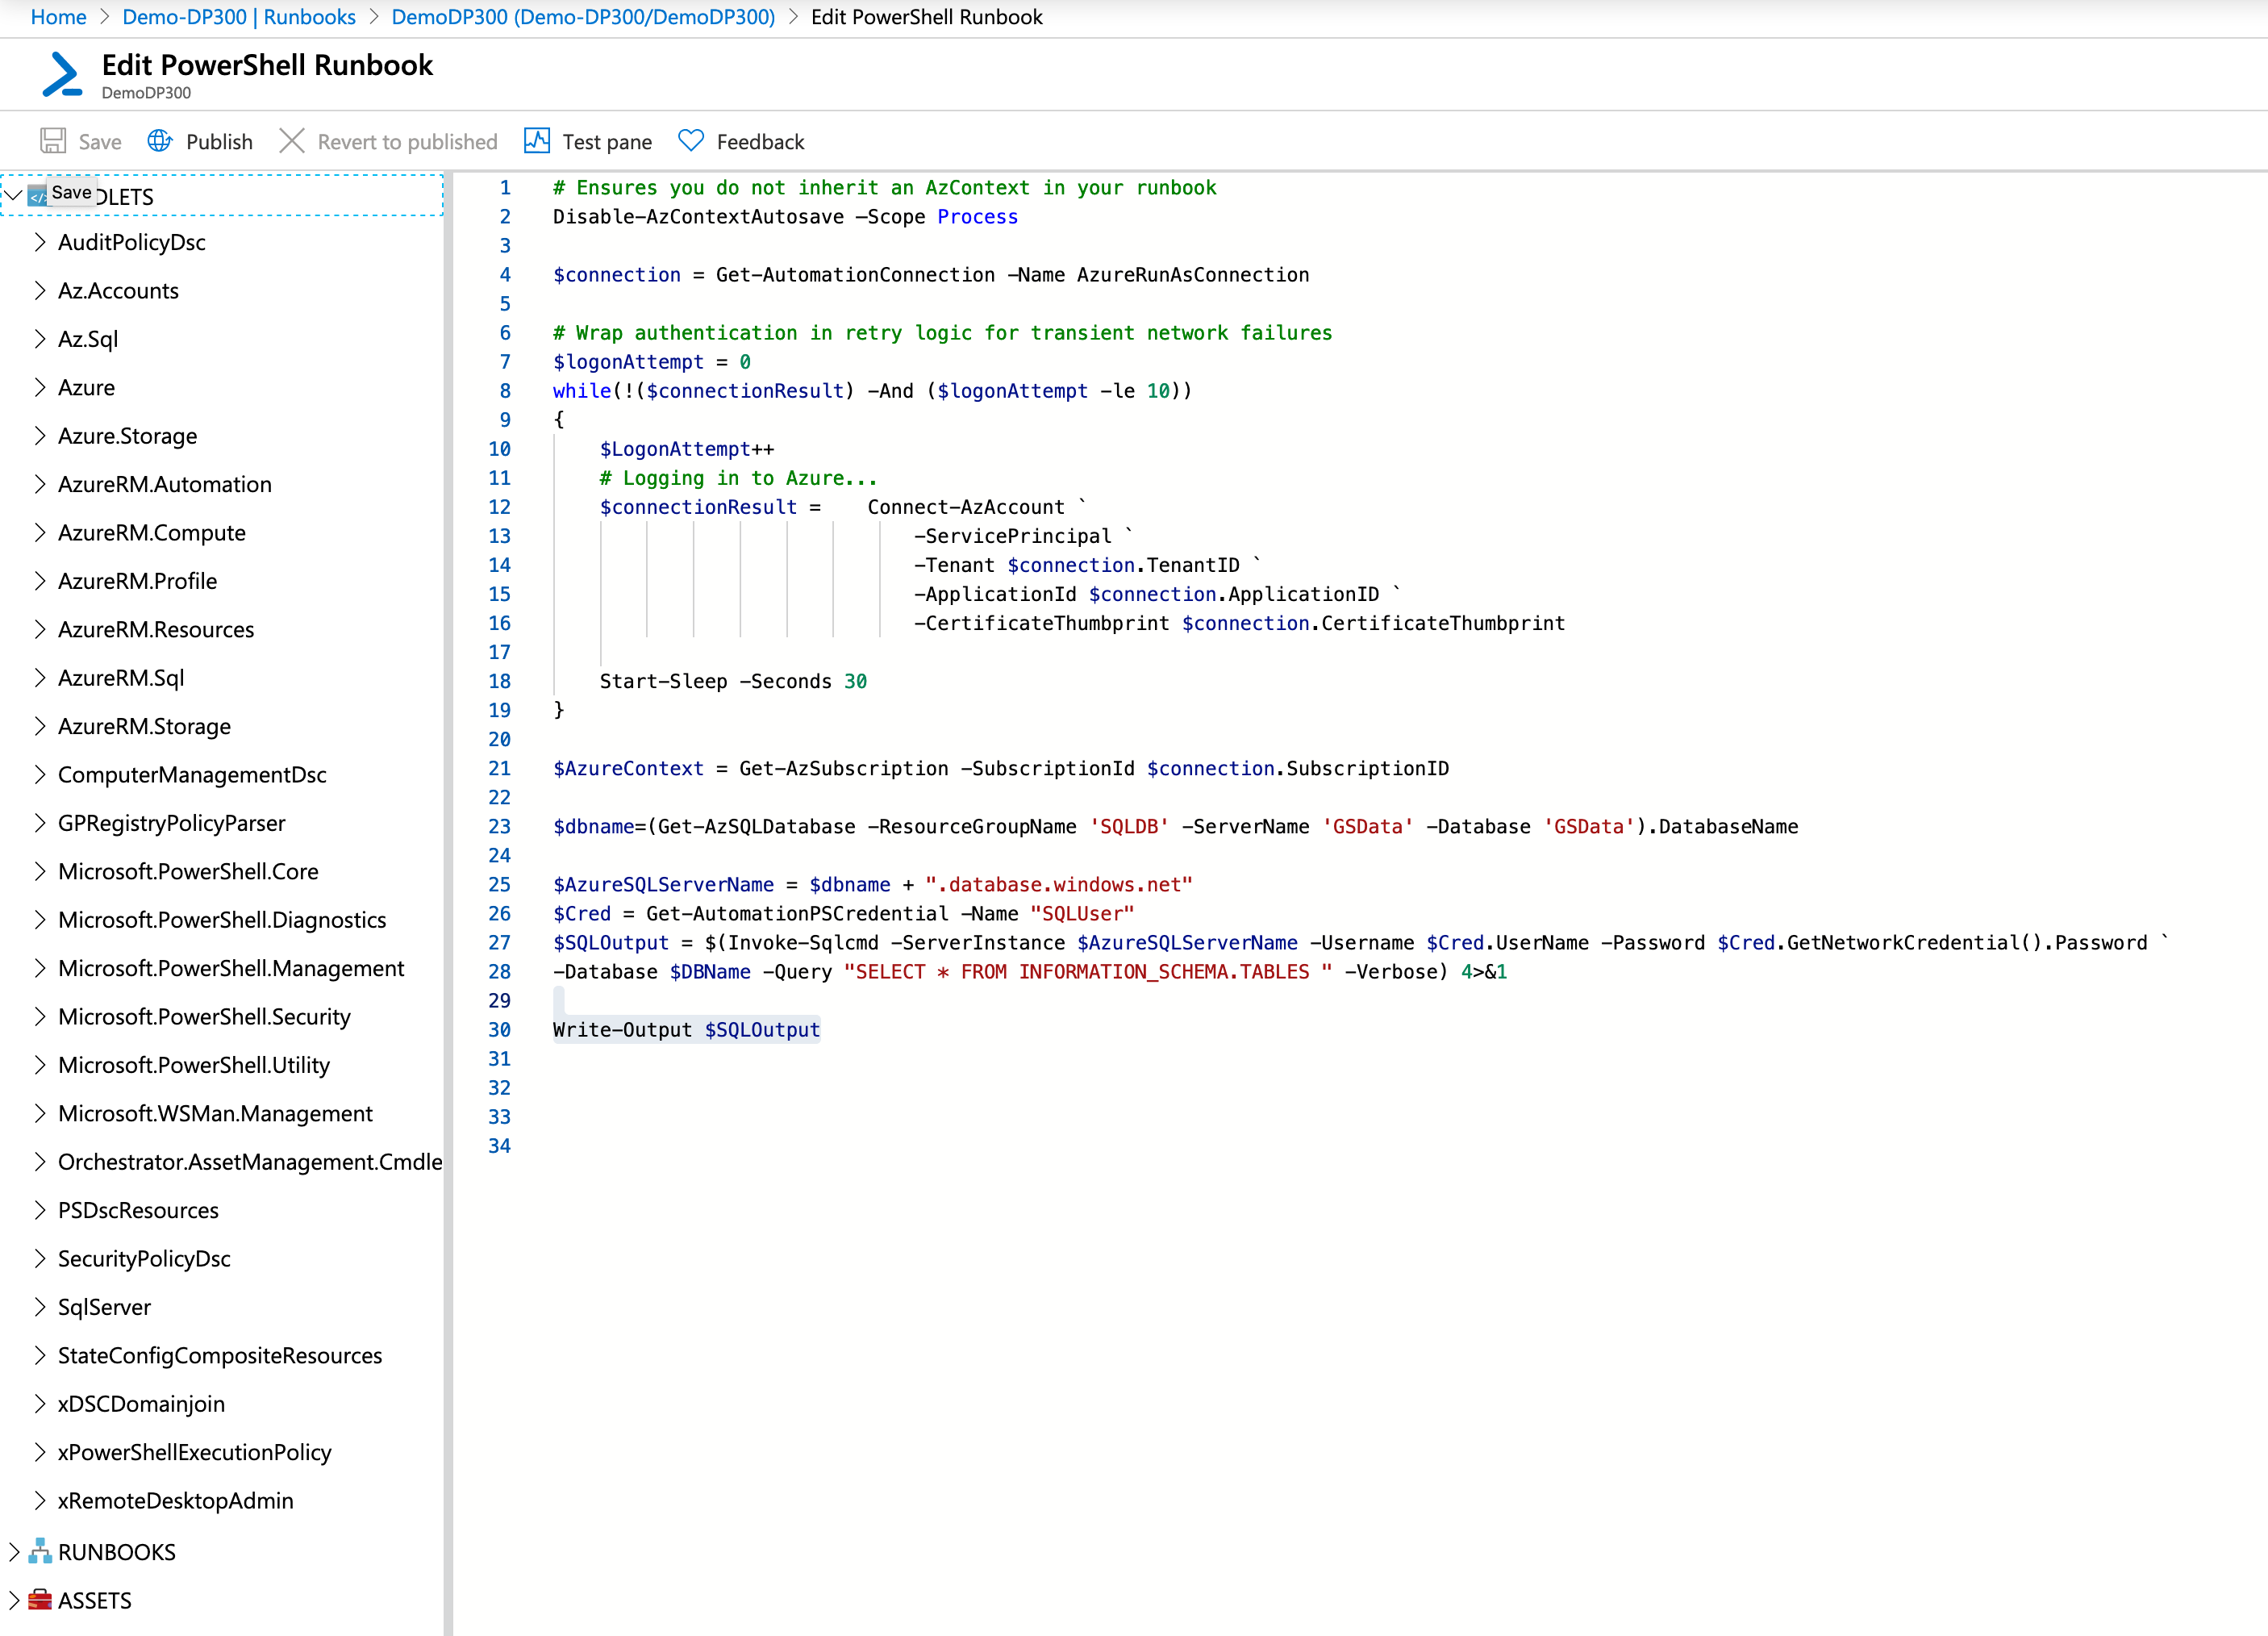 Schermopname van het Azure Automation-voorbeeldrunbook.